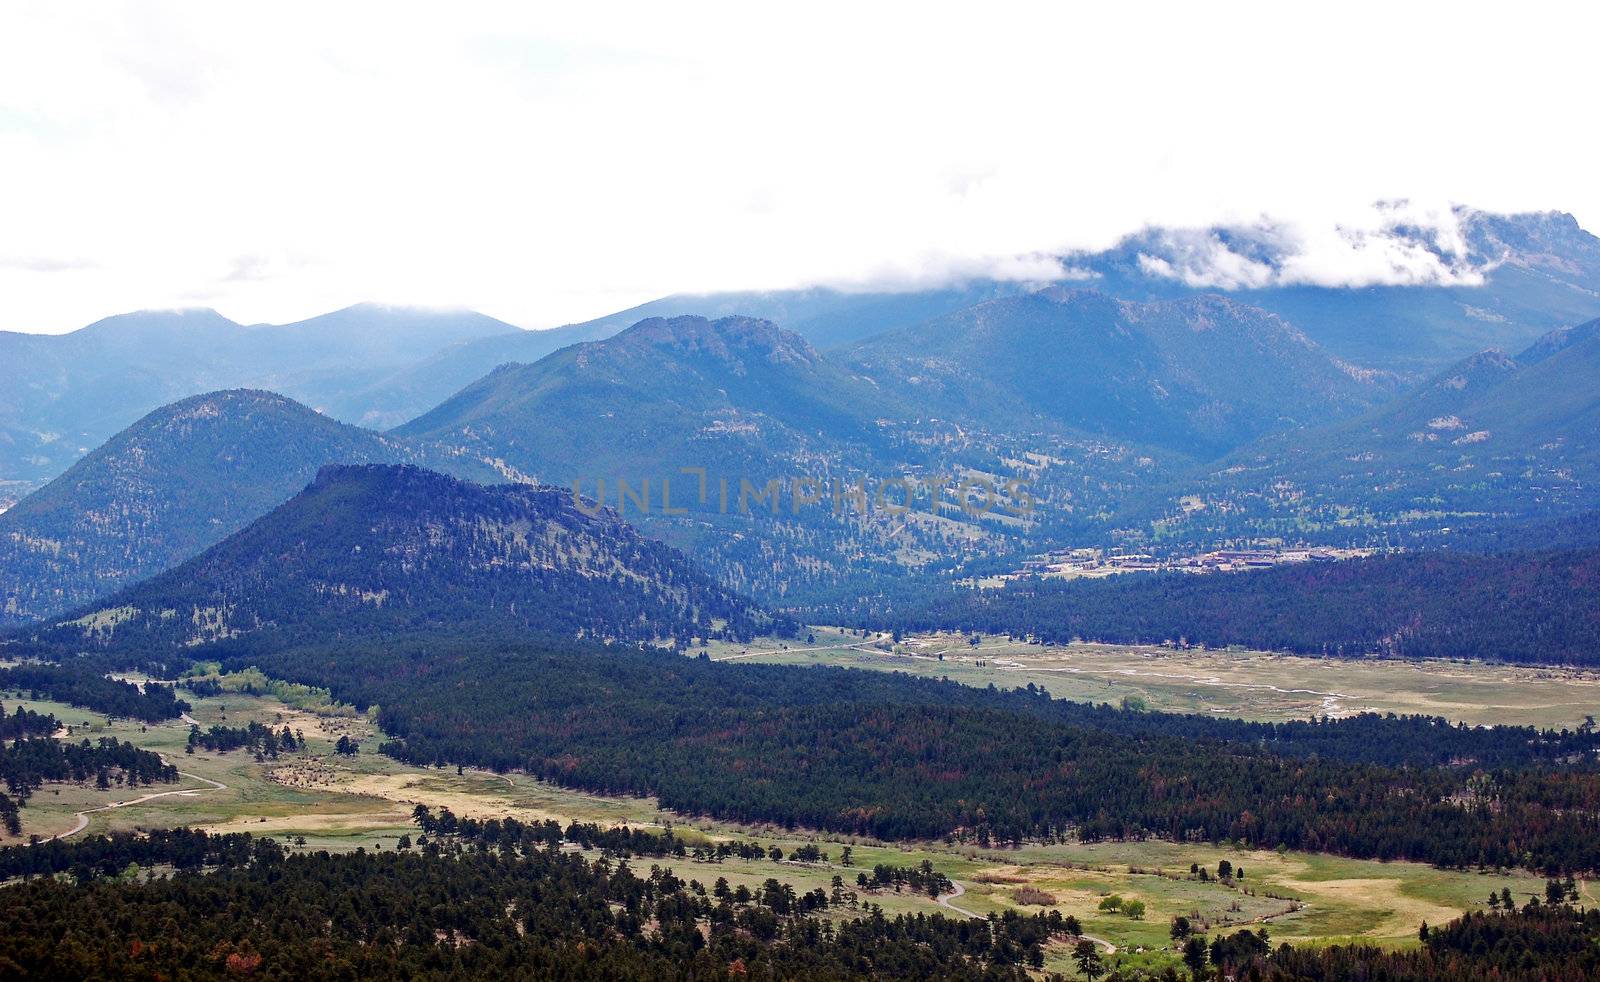 Colorado Mountains